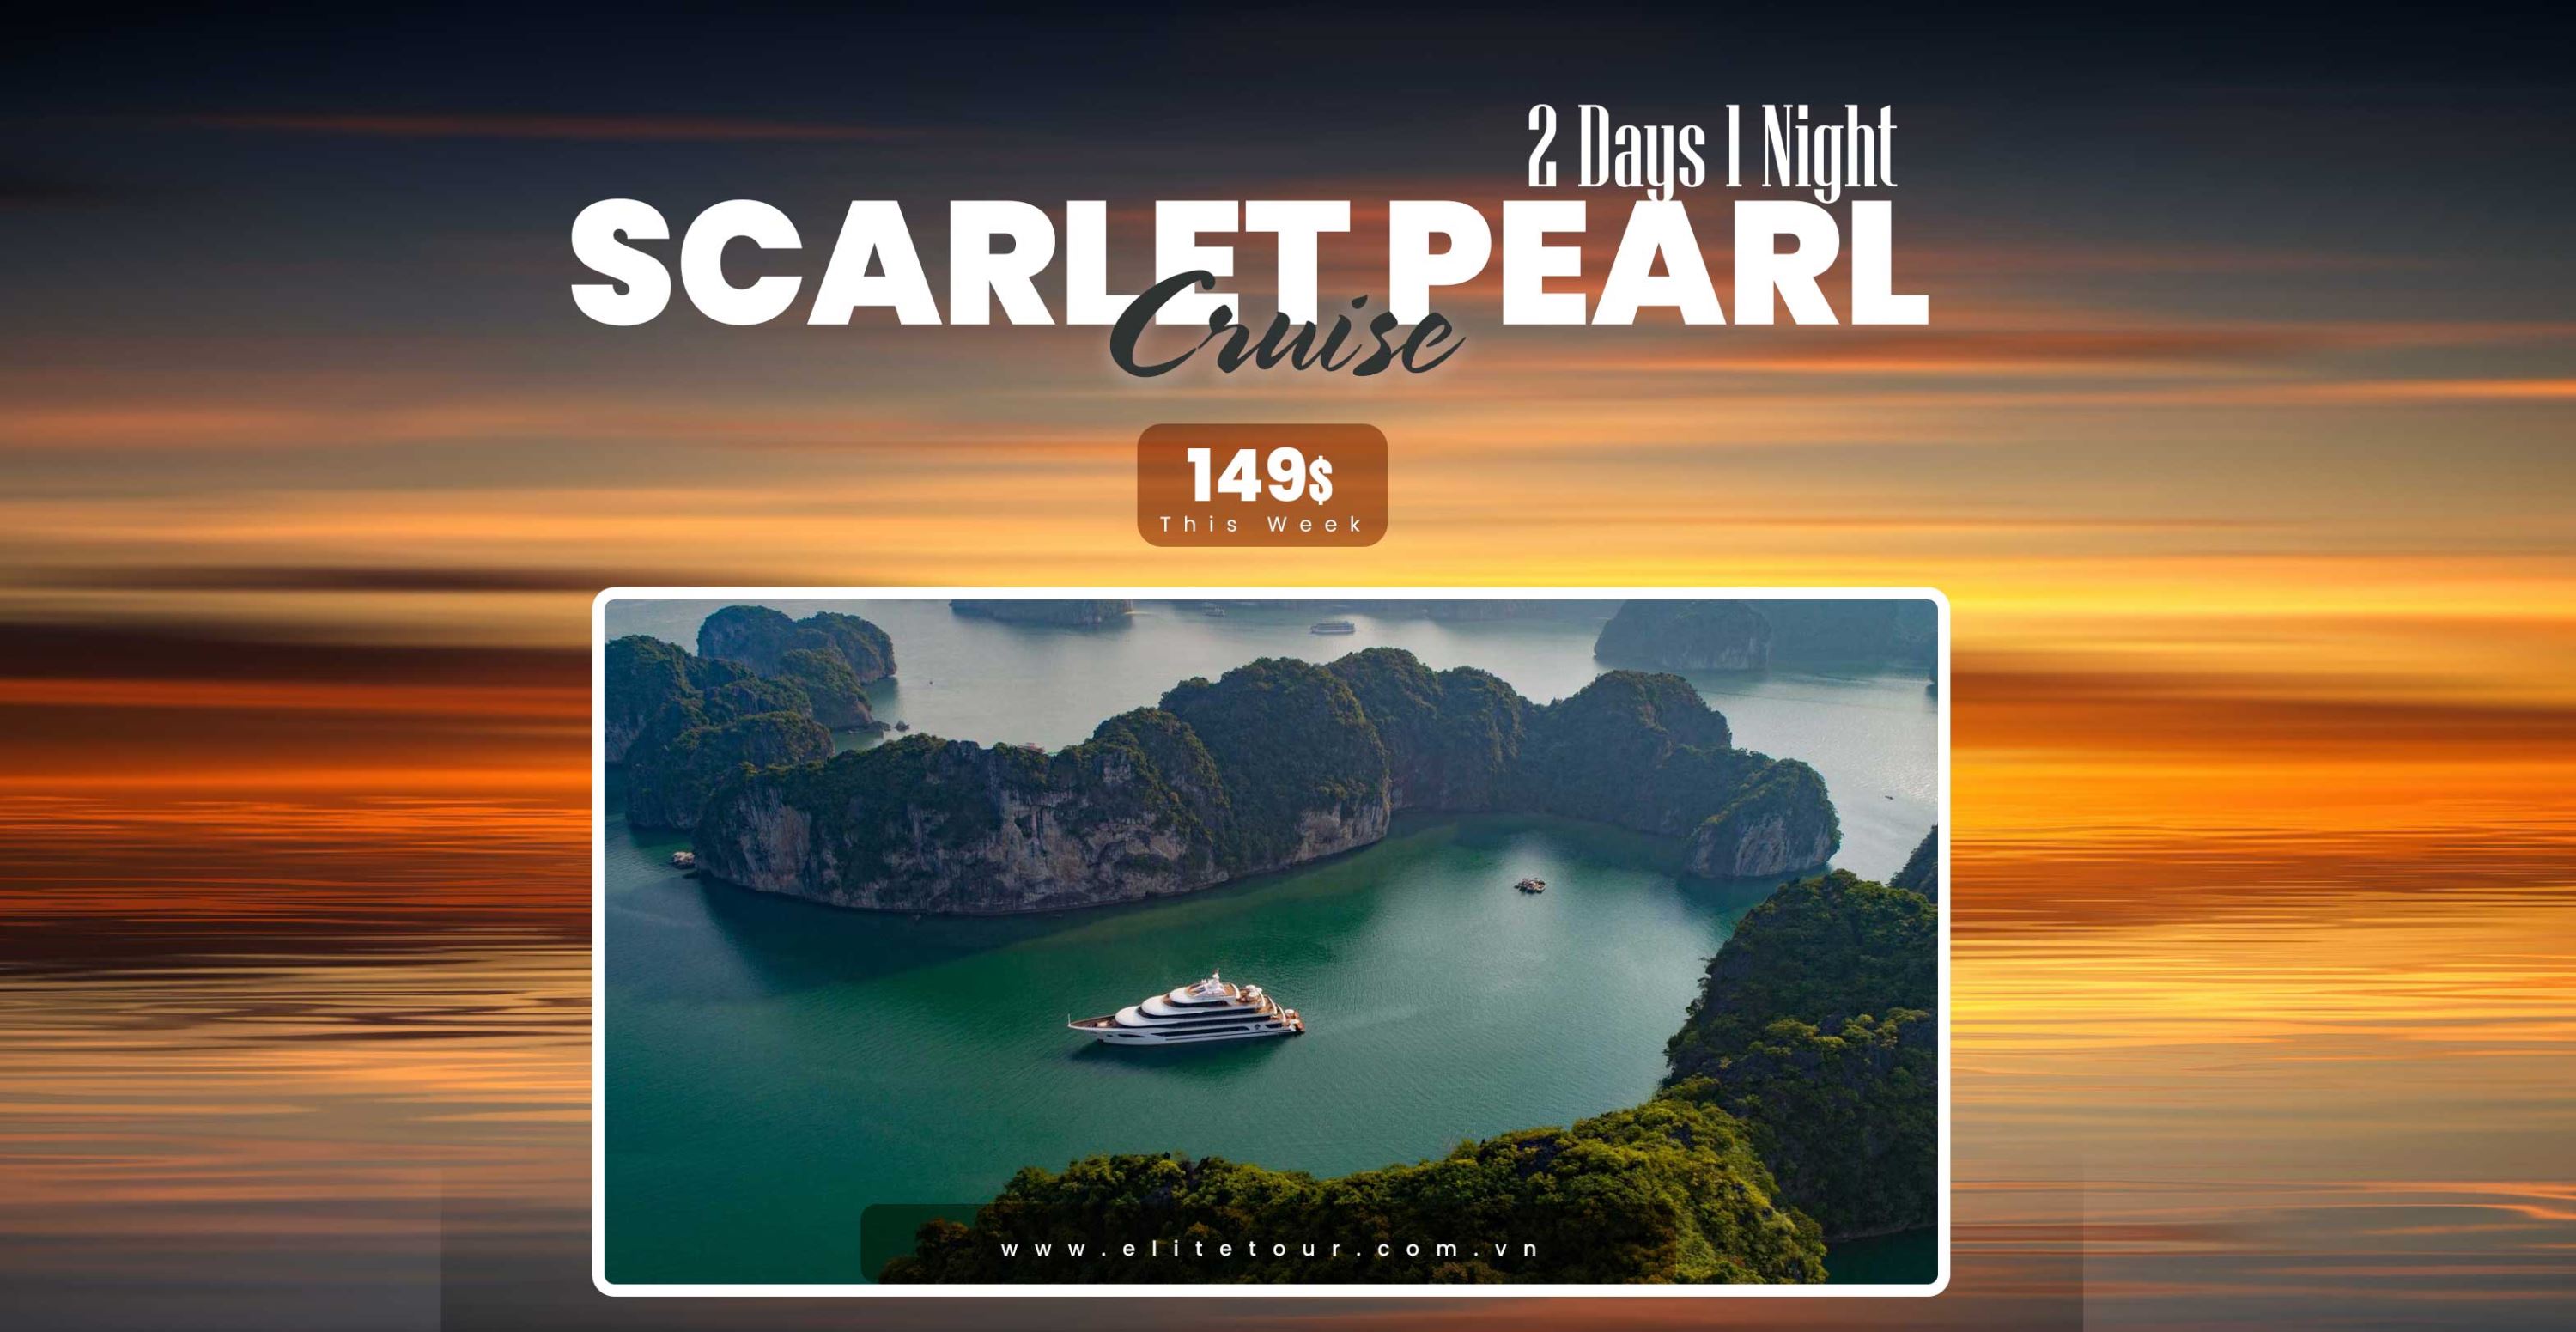 Scarlet Pearl Cruise Lan Ha Bay